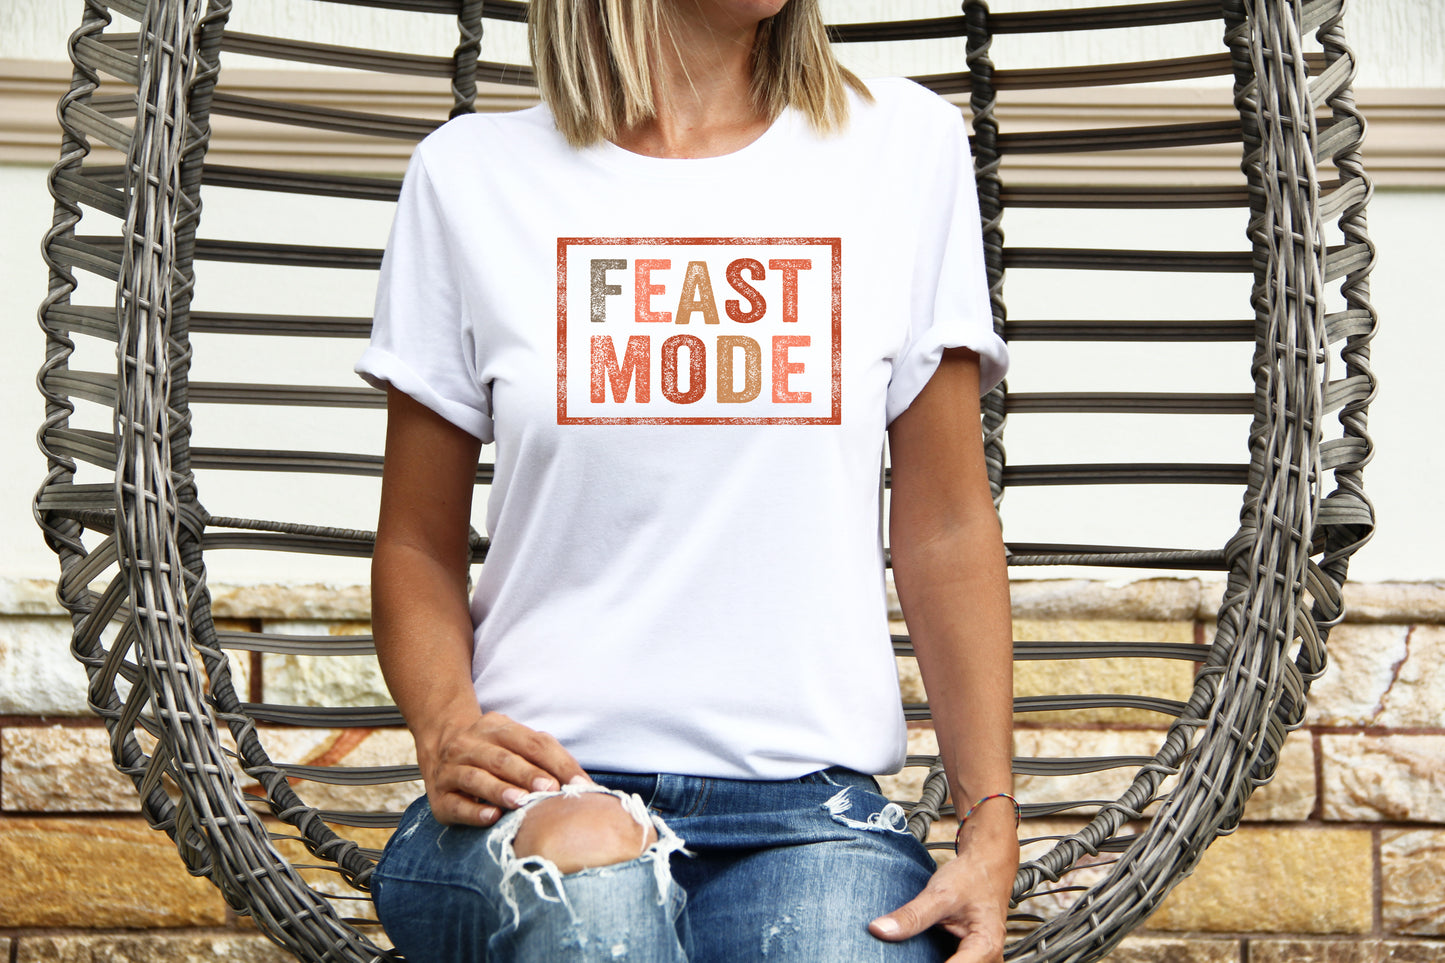 Feast Mode Thanksgiving Jersey Short Sleeve Tee Bella + Canvas 3001 T-Shirt